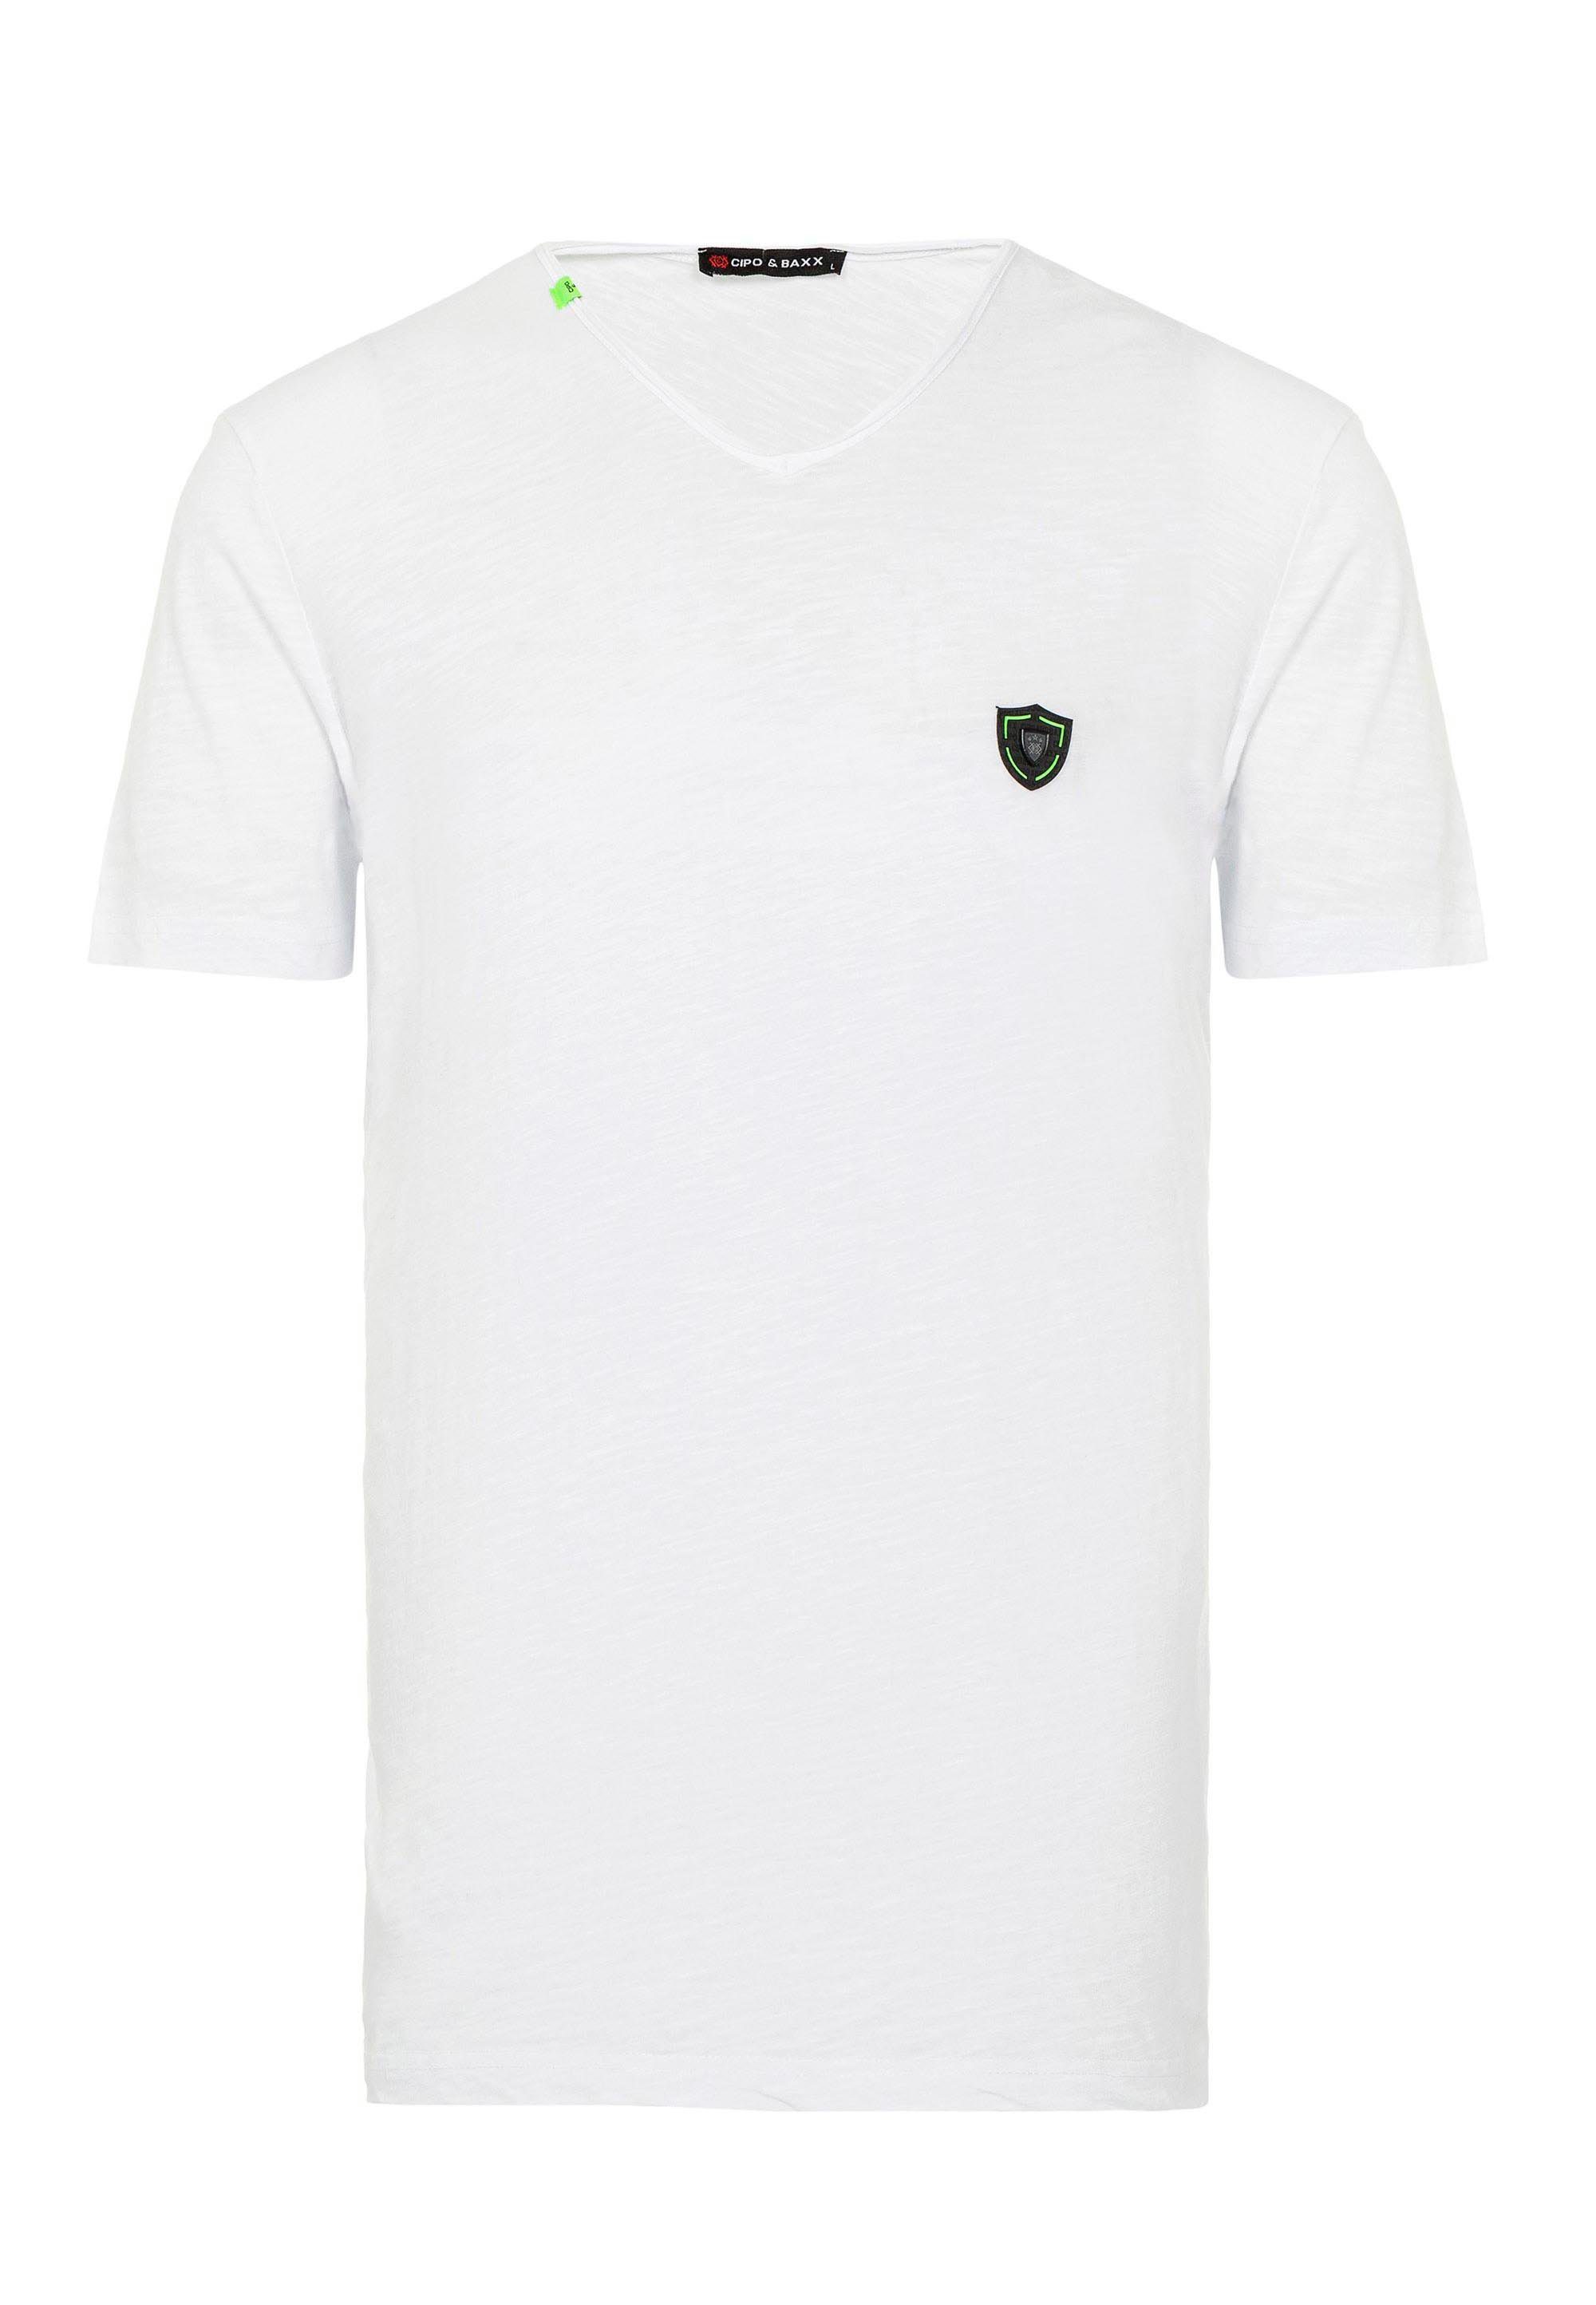 Cipo & Baxx T-Shirt CT648 im sportlichen Look weiß